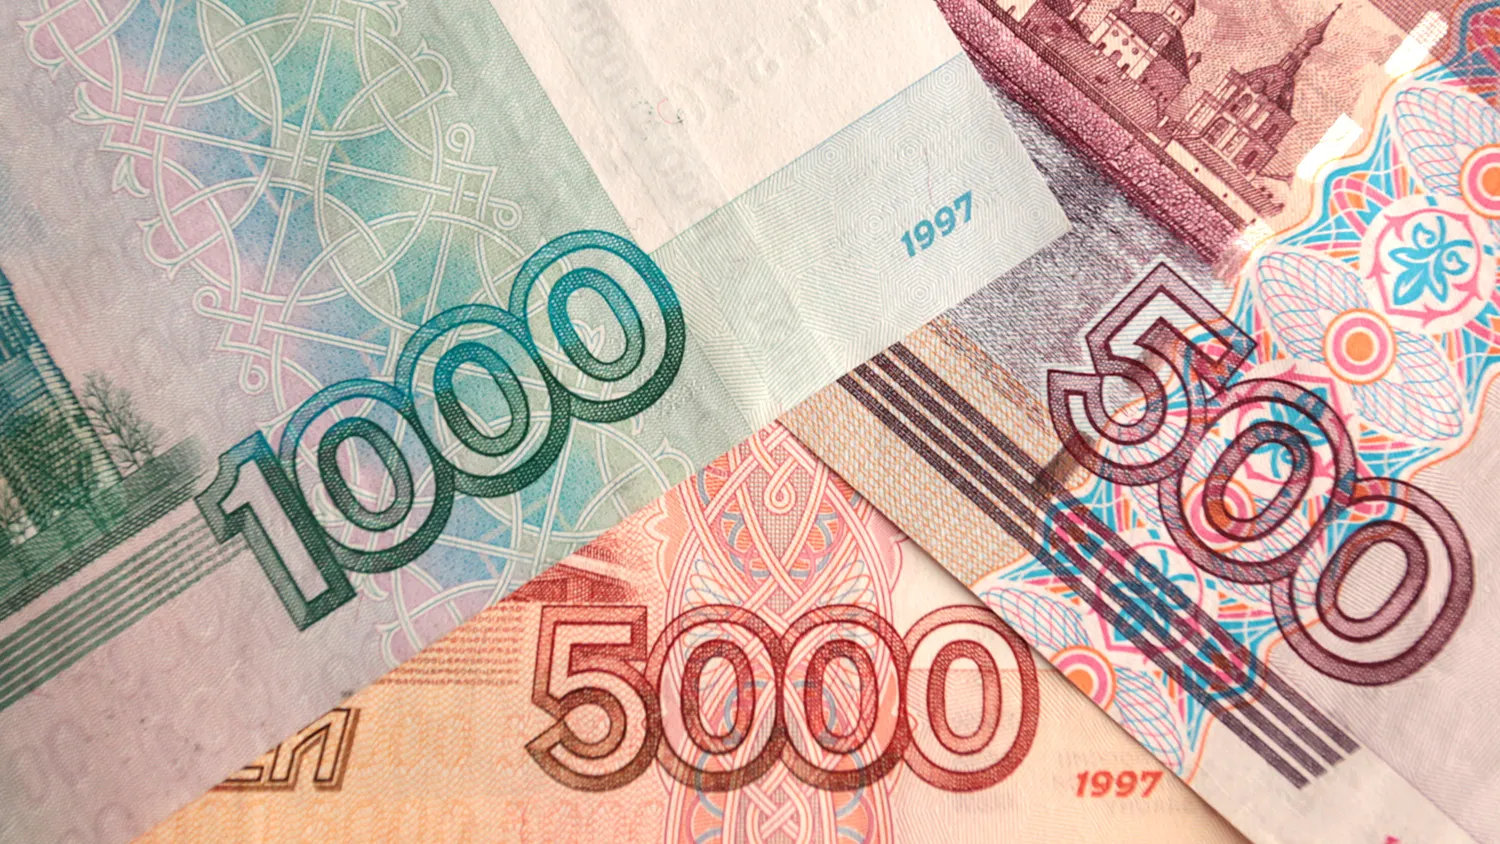 За декаду максимальная ставка по рублевым вкладам топ-10 банков выросла на 0,01%  